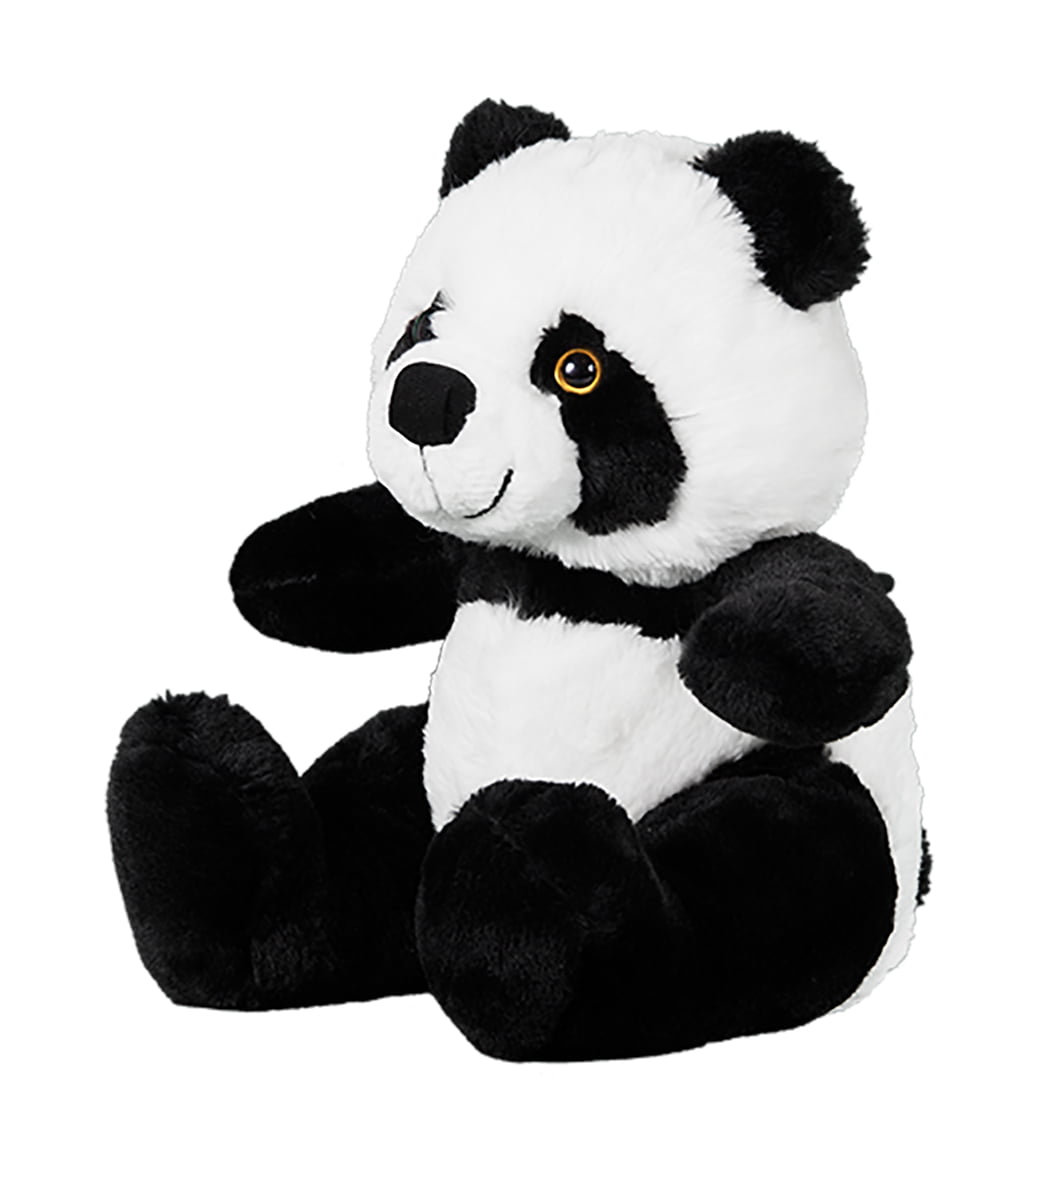 Teddy Cuddly Soft 8 inch Stuffed Pan the Panda...We stuff 'em...you love 'em! 